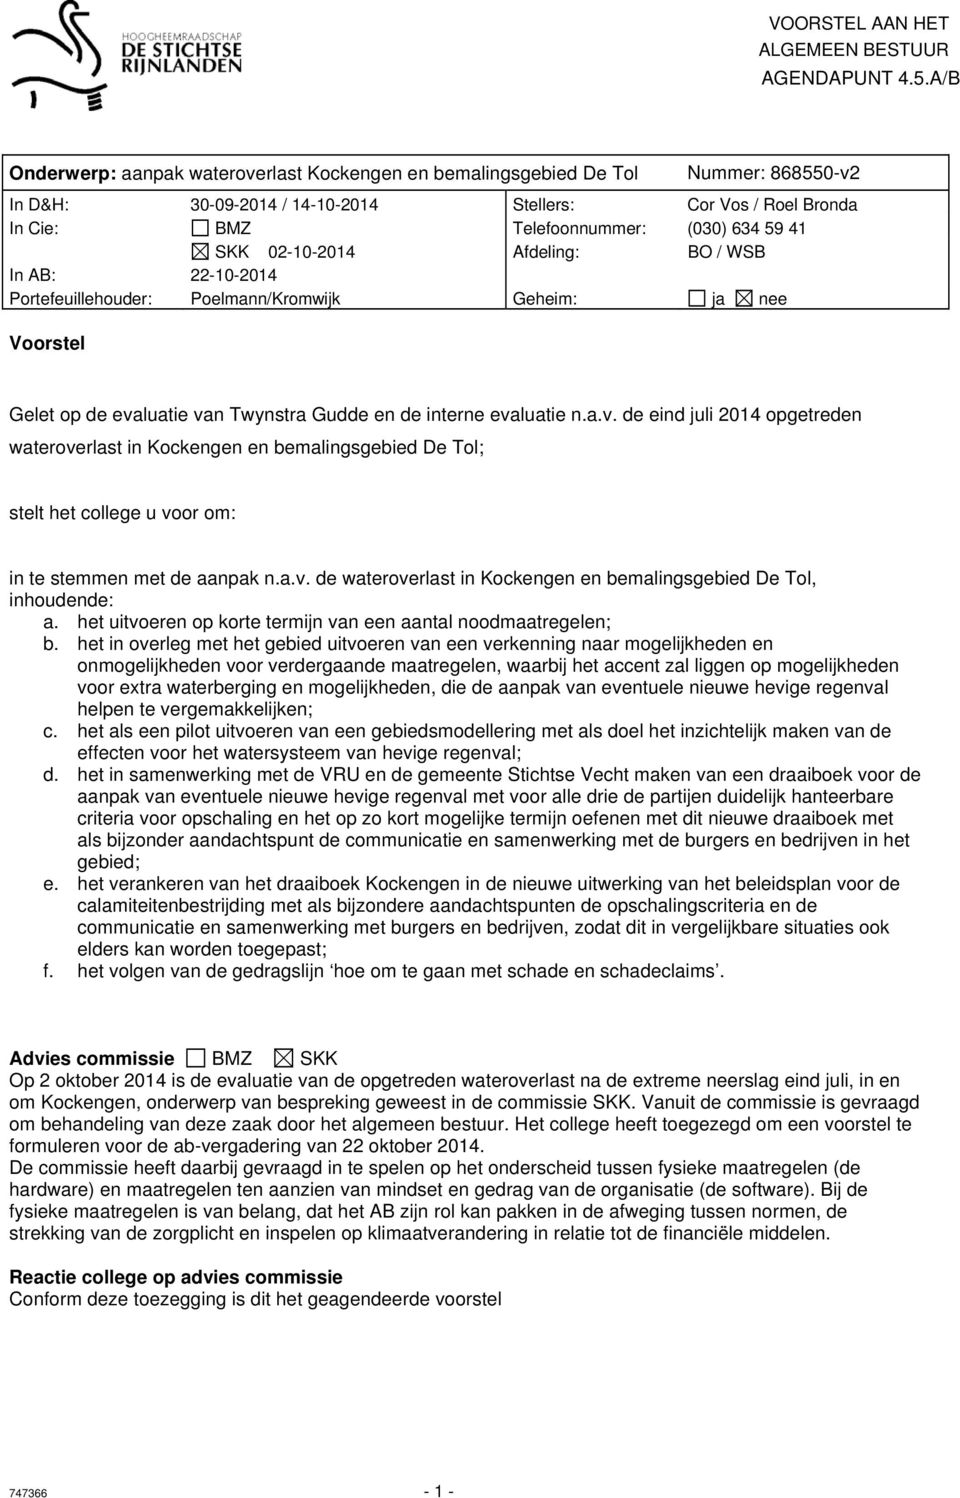 SKK 02-10-2014 Afdeling: BO / WSB In AB: 22-10-2014 Portefeuillehouder: Poelmann/Kromwijk Geheim: ja nee Voorstel Gelet op de eva